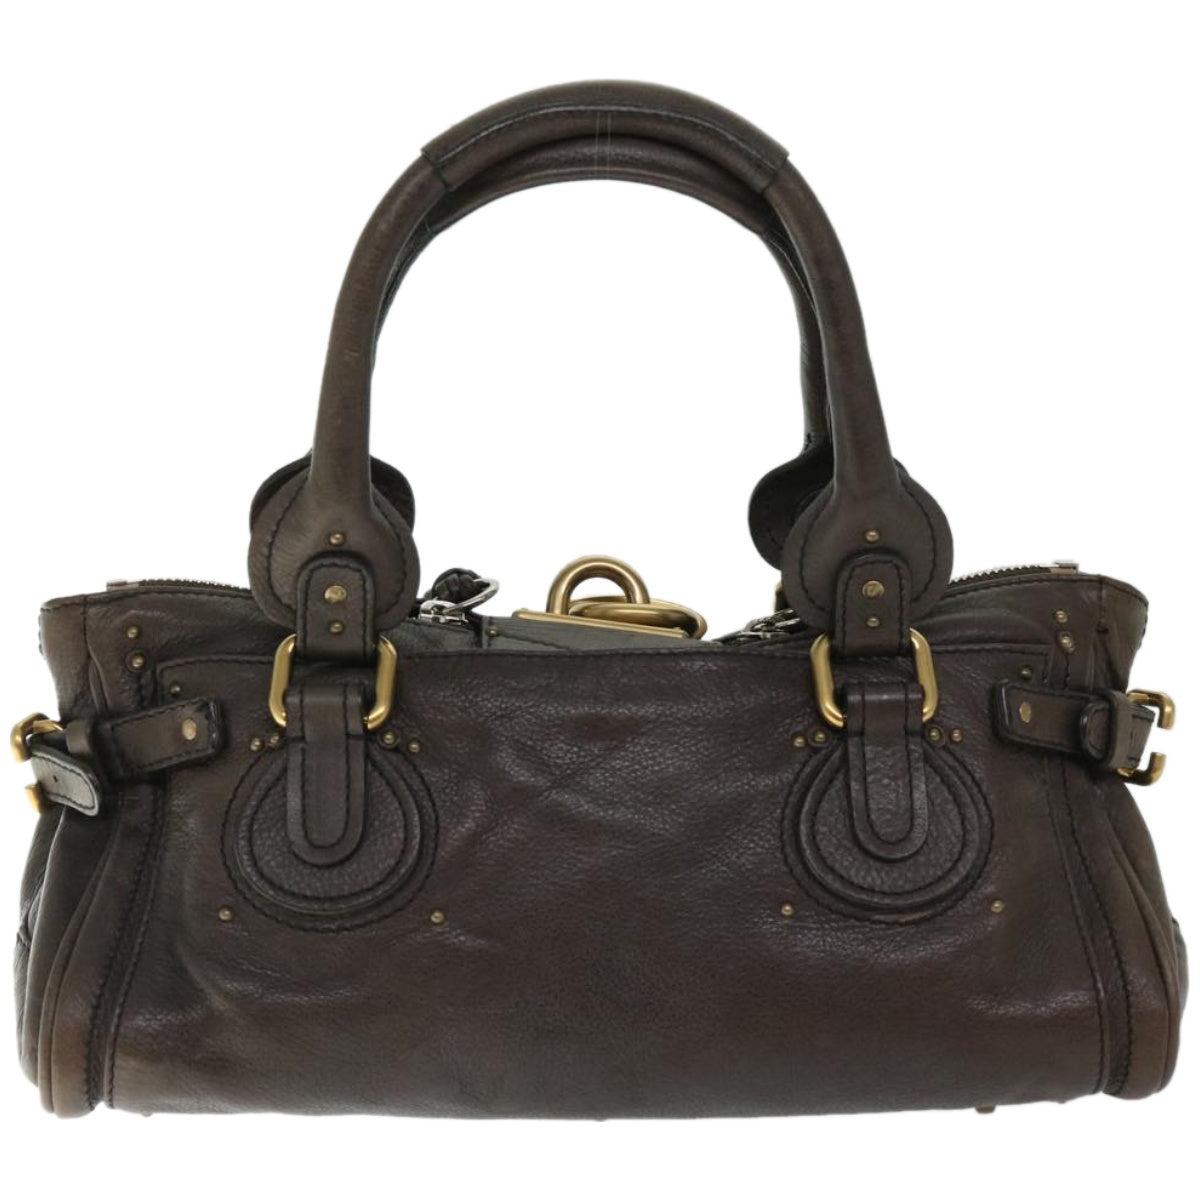 Chloe Paddington Hand Bag Leather Brown Auth am5880 - 0